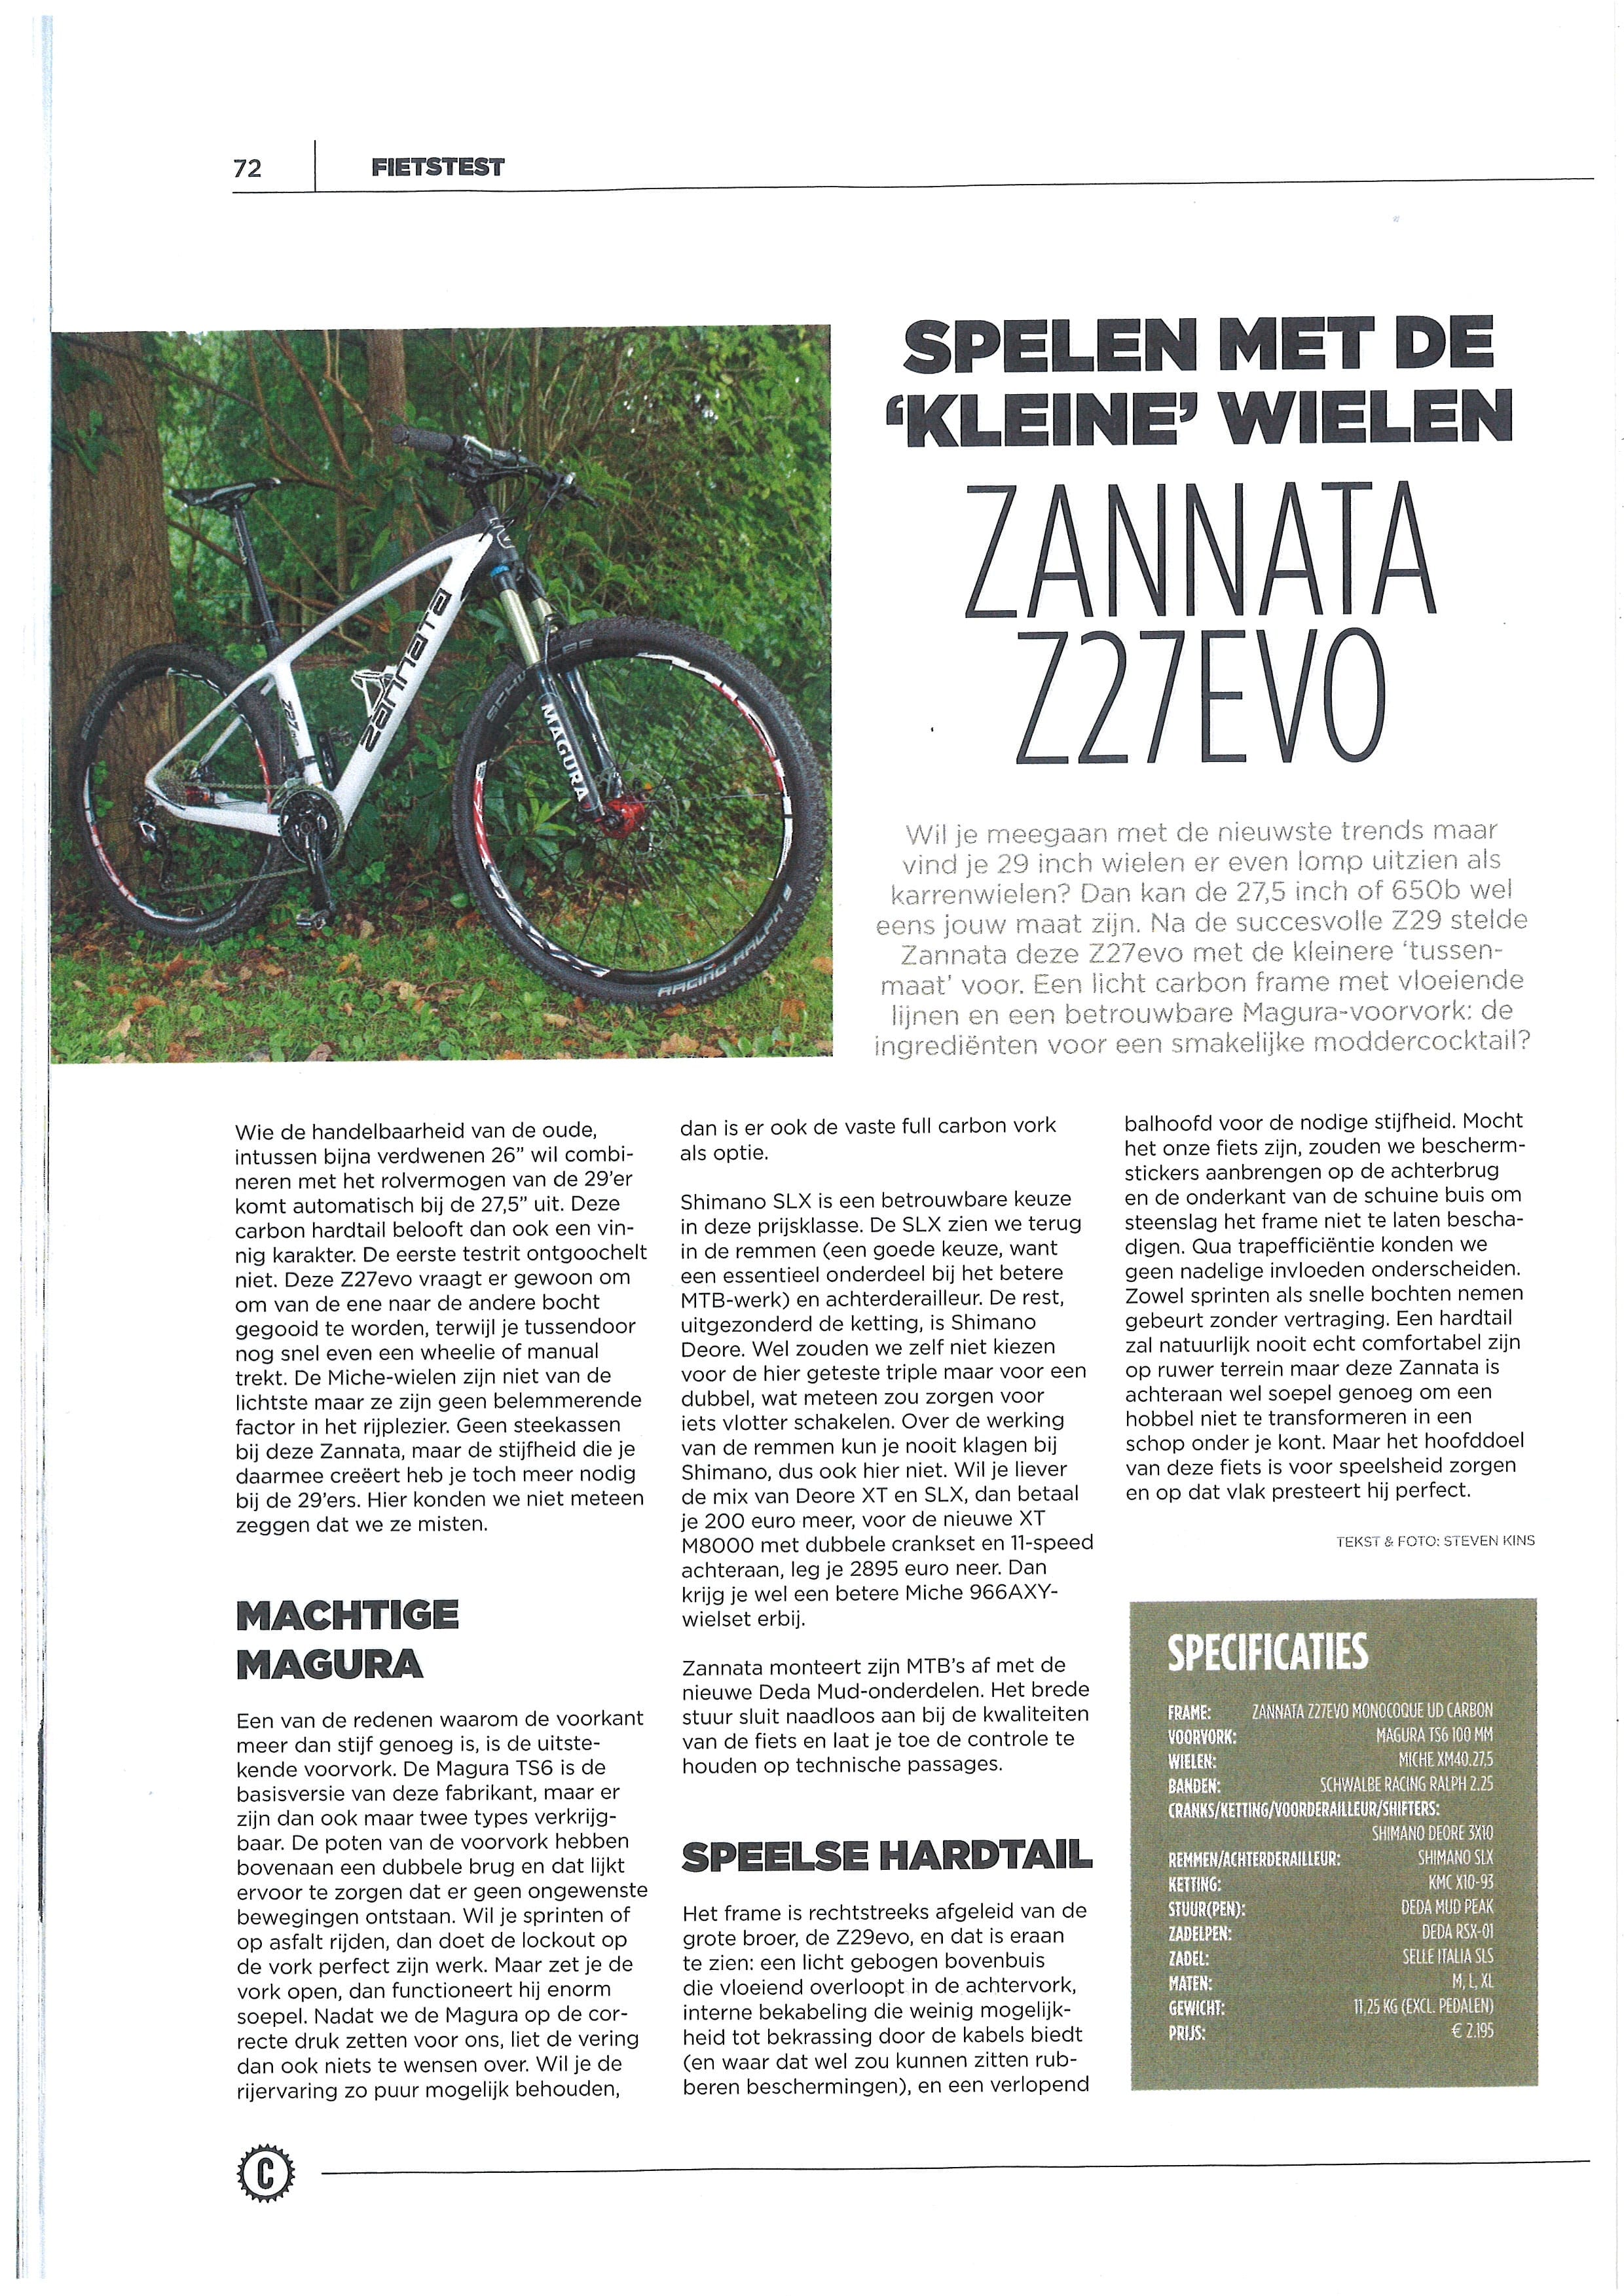 Spelen met ‘kleine’ wielen – test Zannata Z27evo in Cycling.be